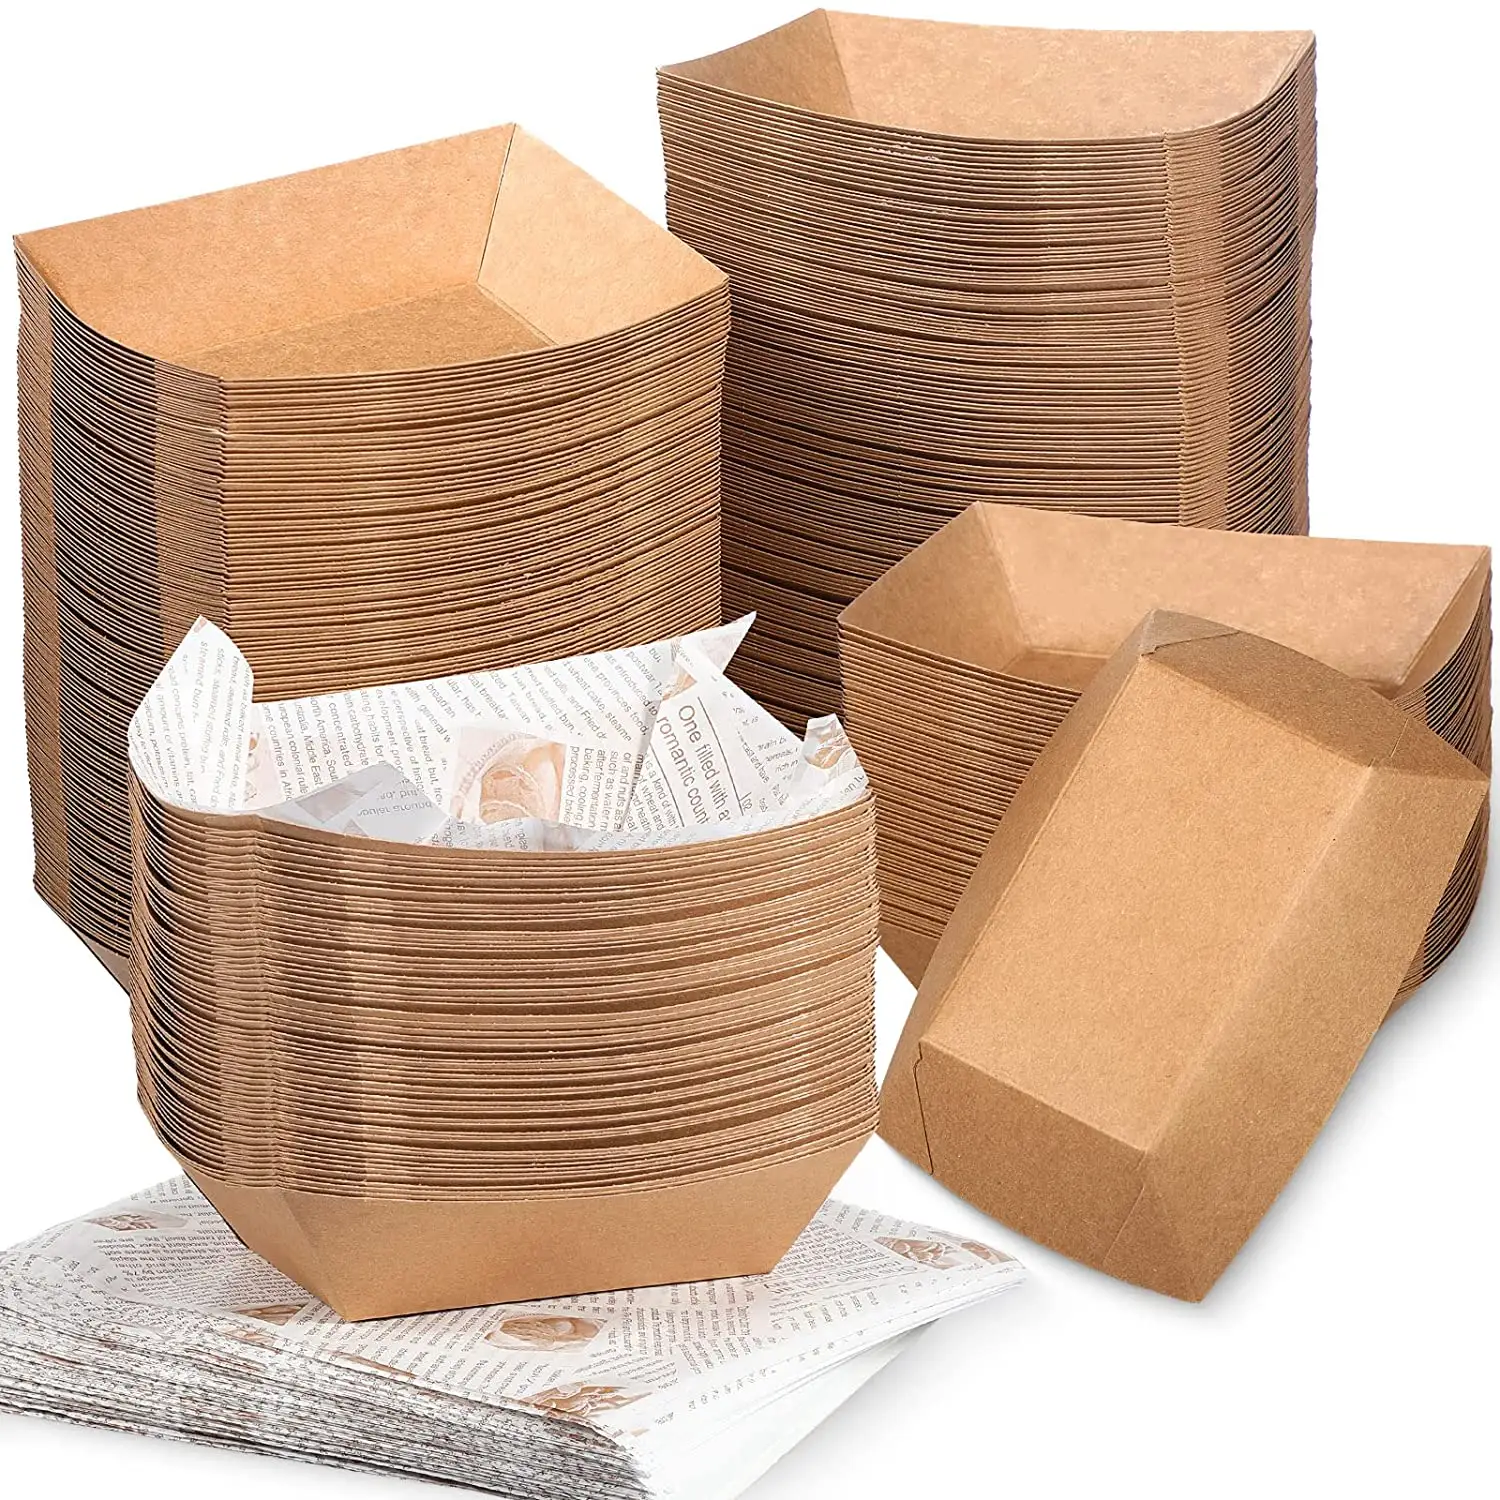 Einweg-Lebensmittel fach aus braunem Papier und fett dichtem Deli Liner Coated Paper board Boats Wax für Nacho, Taco